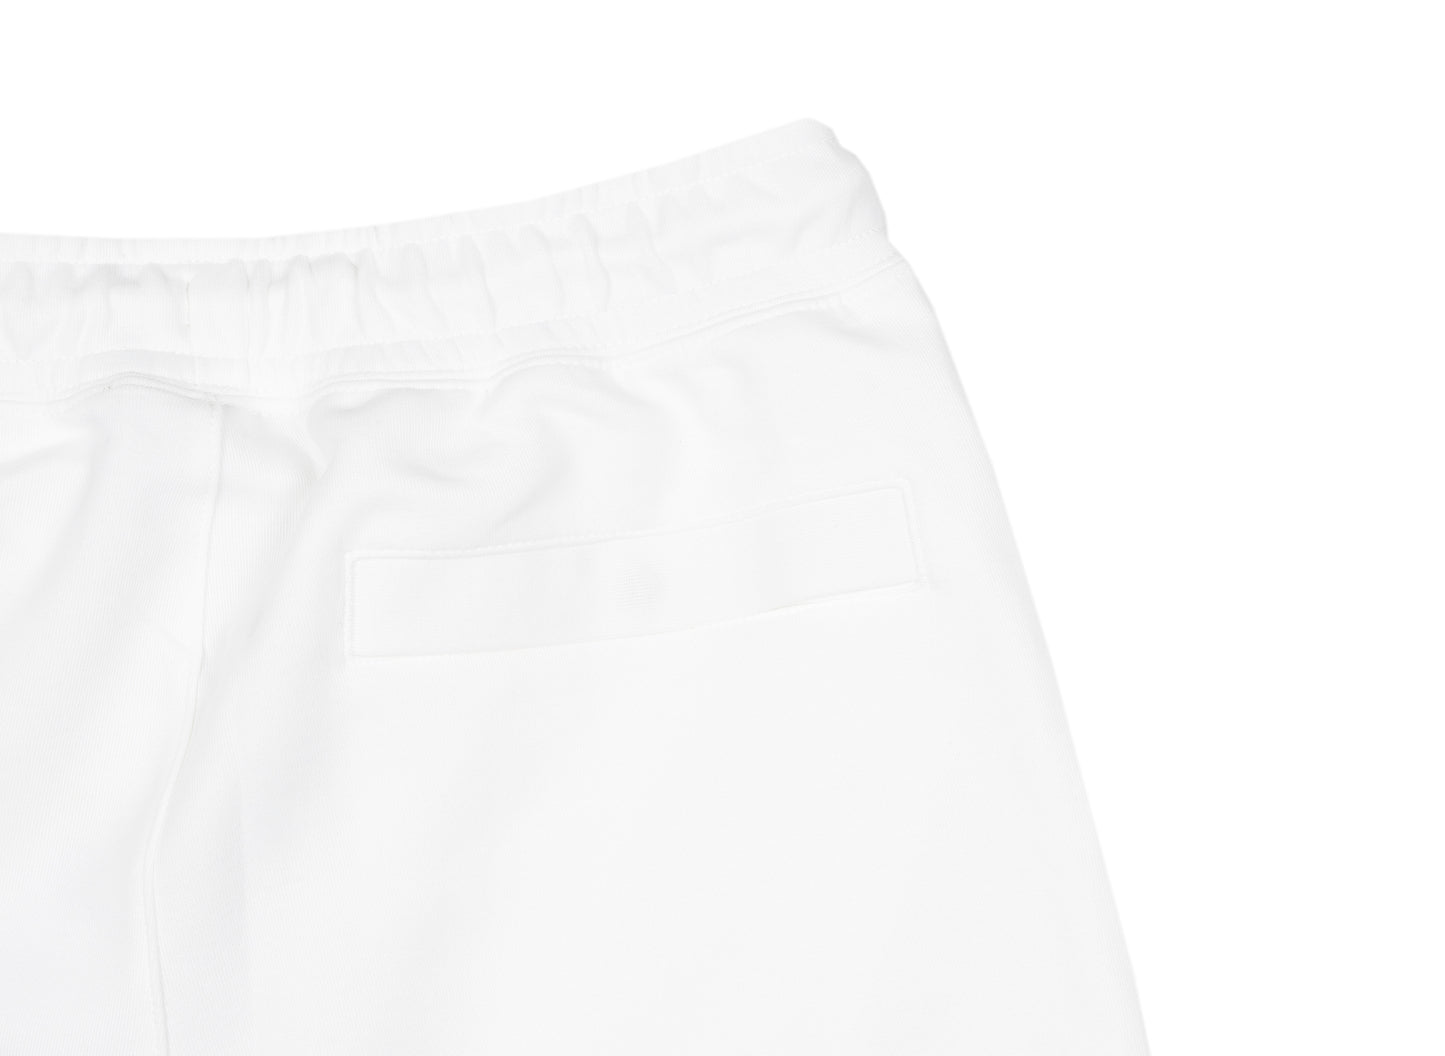 Nike Sportswear Swoosh Tech Fleece Pants